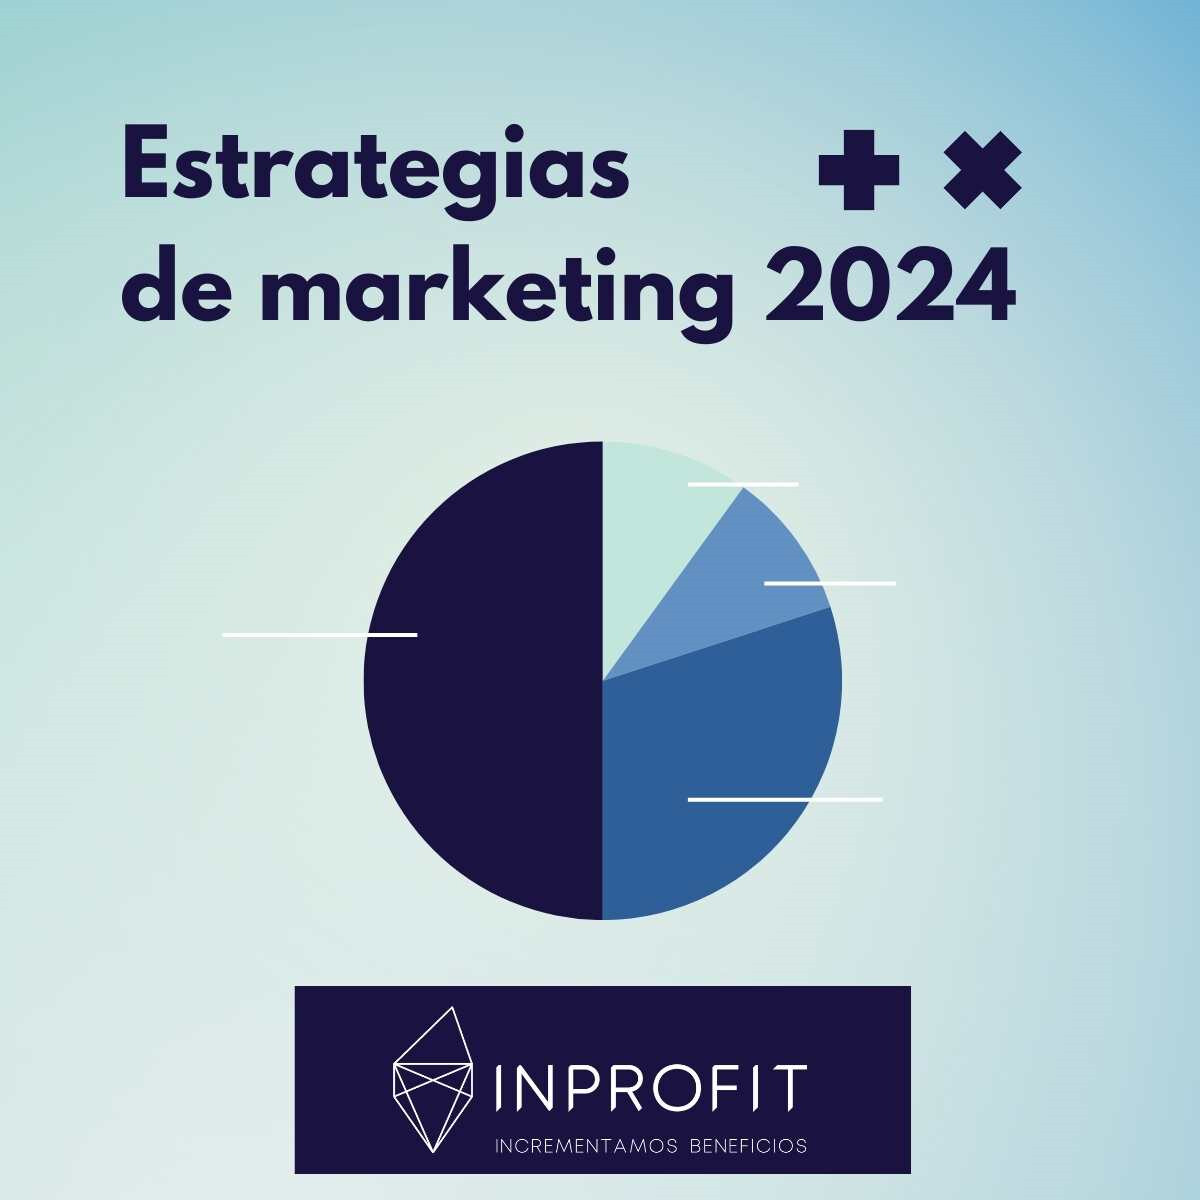 Estrategia de Marketing para el 2024 con éxito